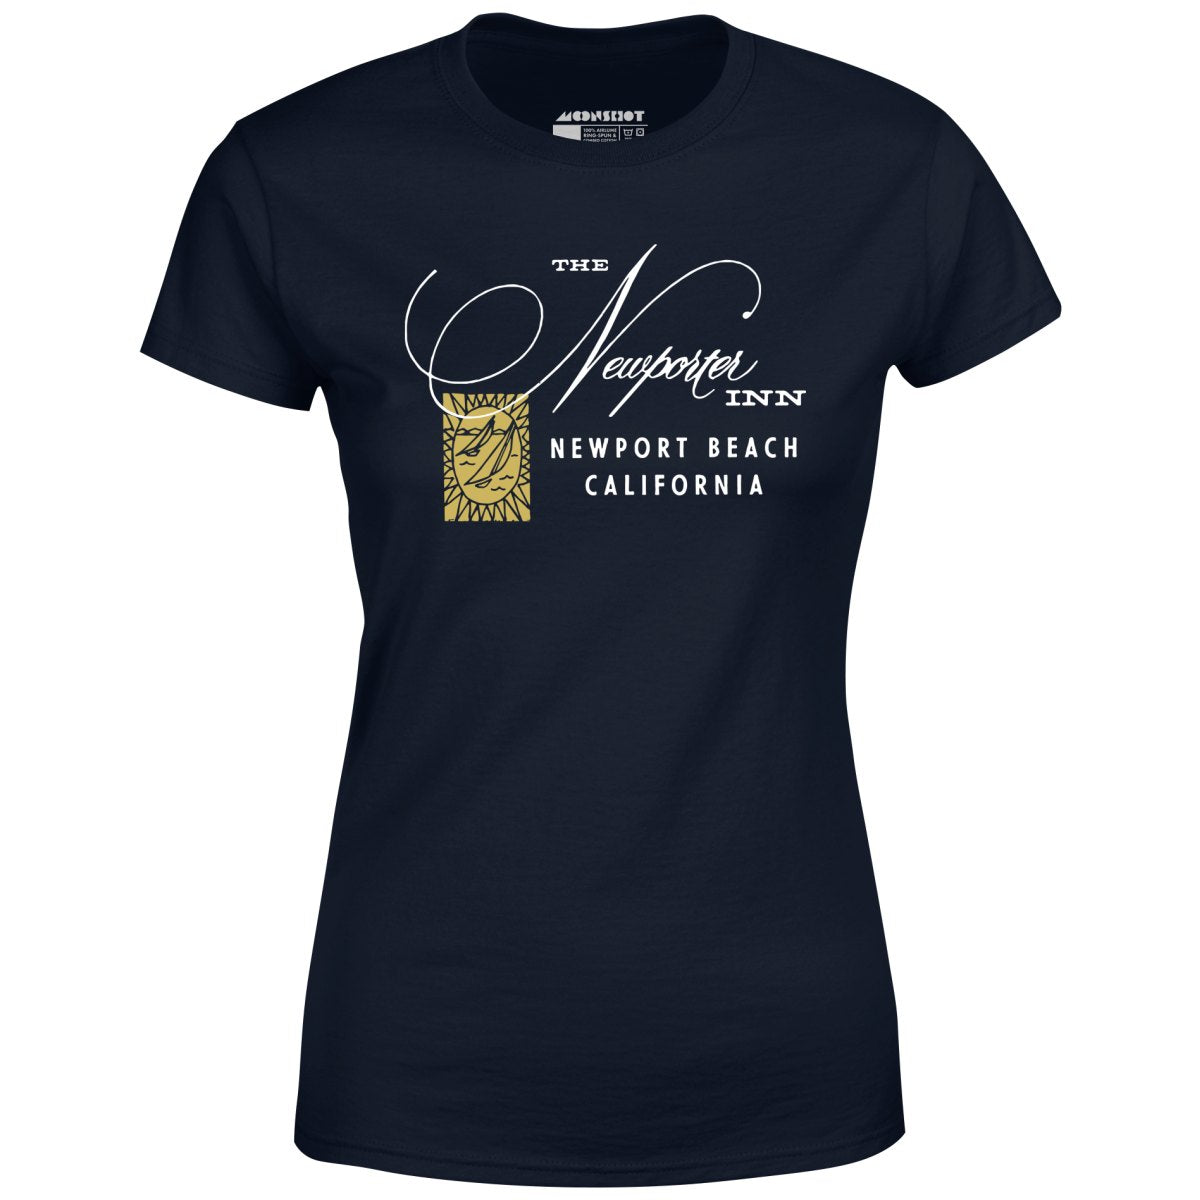 The Newporter Inn - Newport Beach, CA - Vintage Hotel - Women's T-Shirt